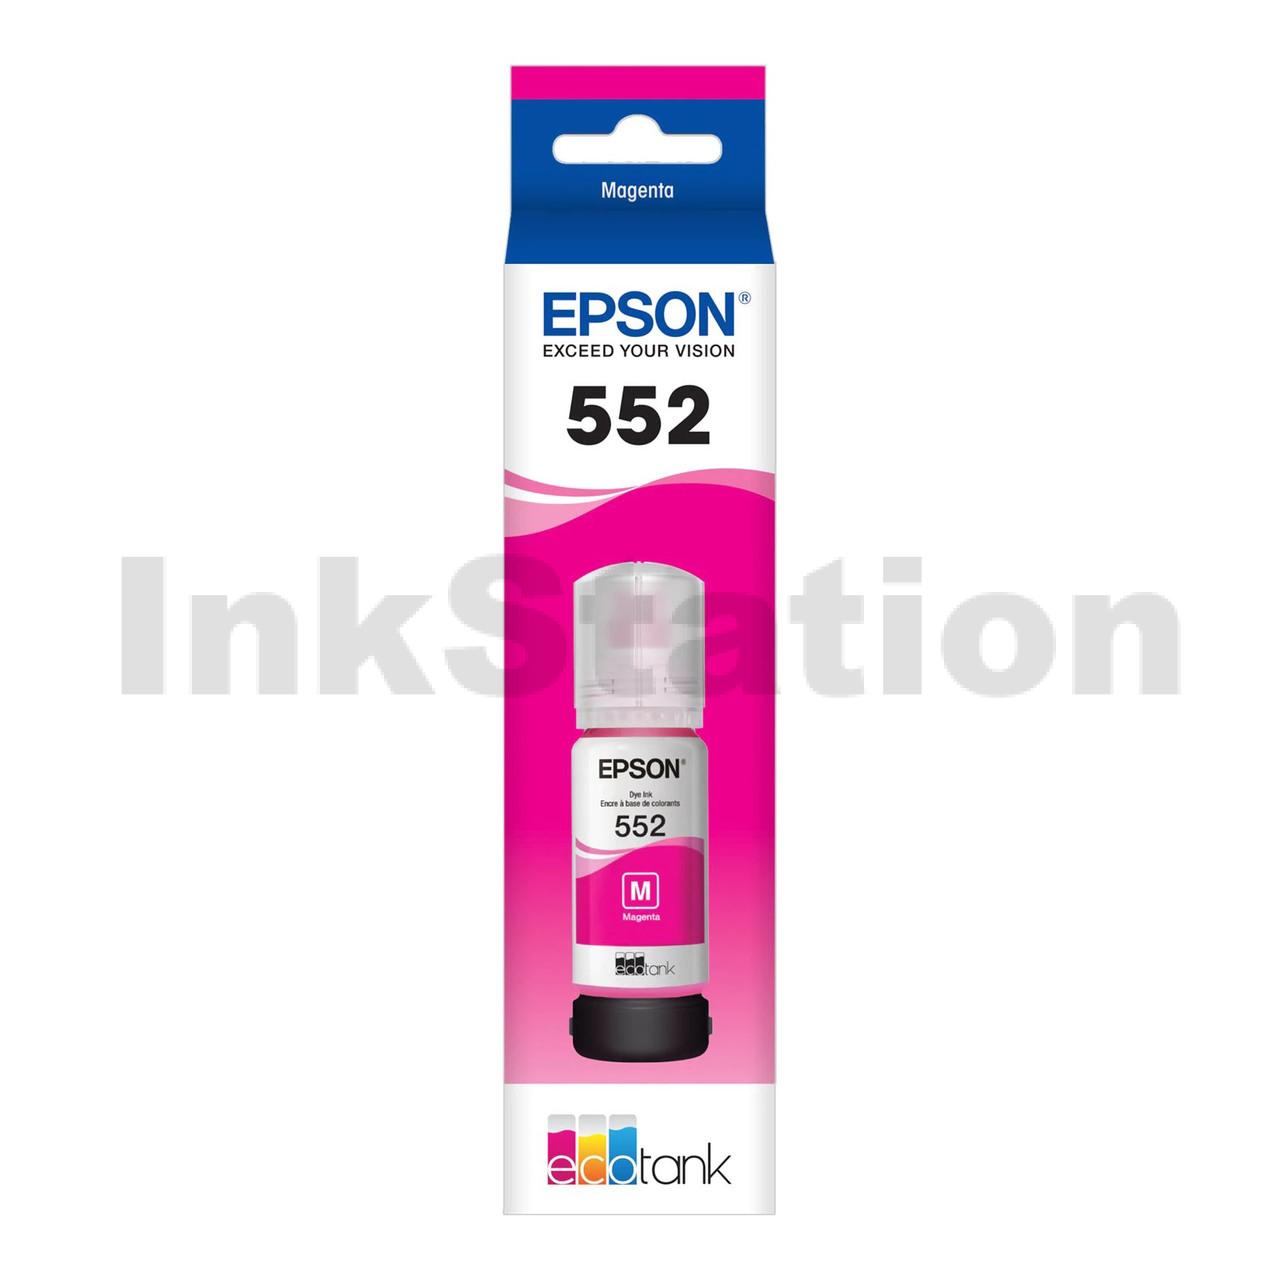 Epson Ecotank Photo Et 8550 Ink Cartridges Ink Station 3856